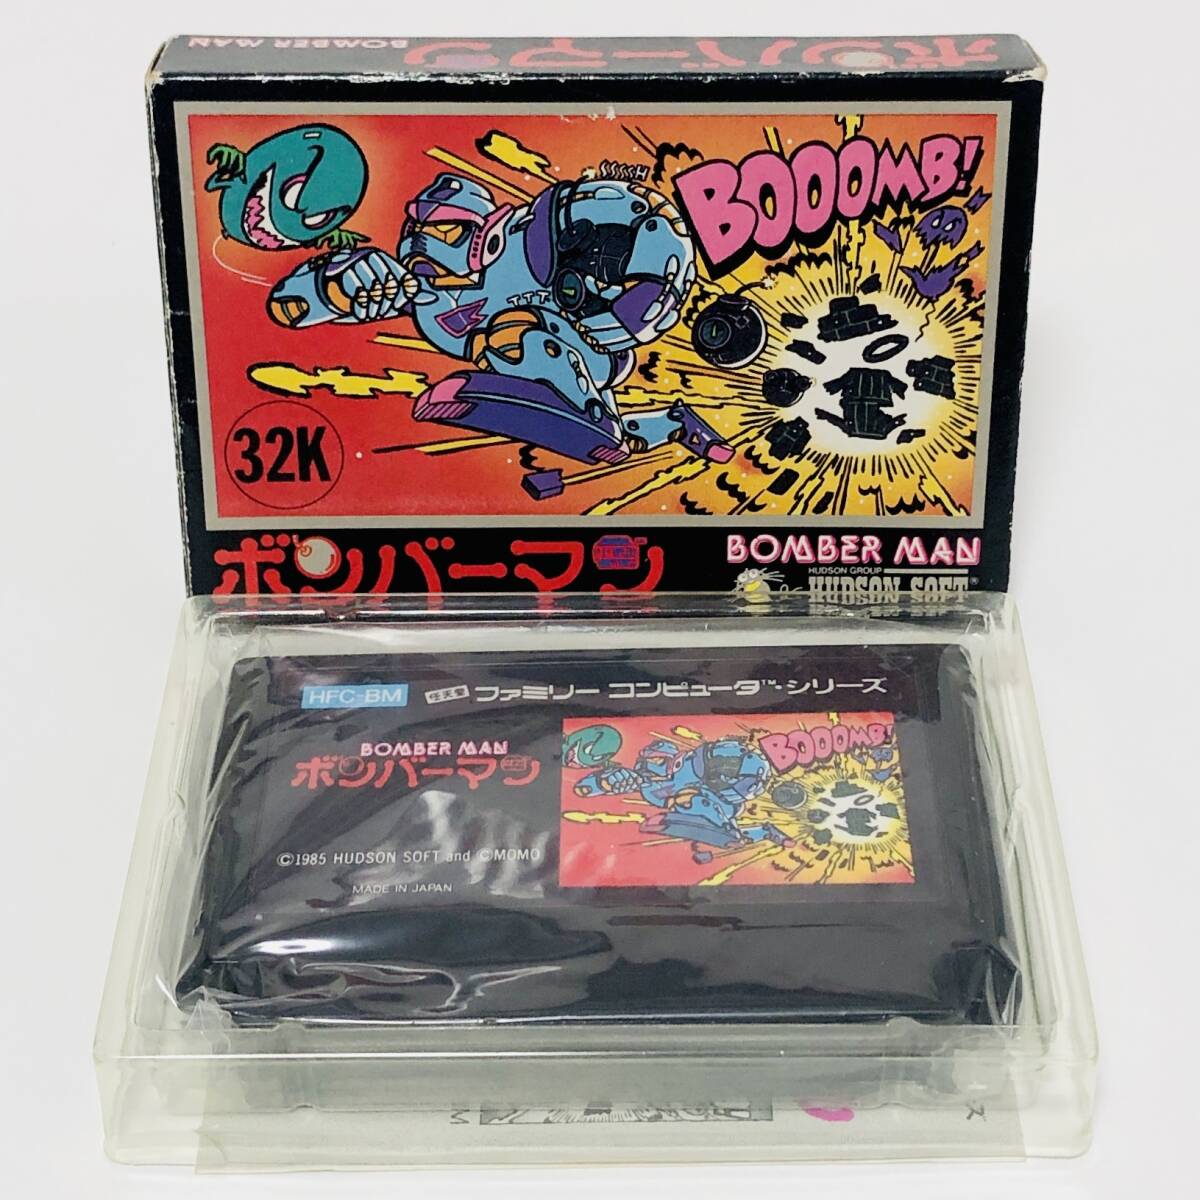 ファミコン ボンバーマン 箱説付き 痛みあり ハドソン レトロゲーム Nintendo Famicom Bomber Man CIB Tested Hudson Soft